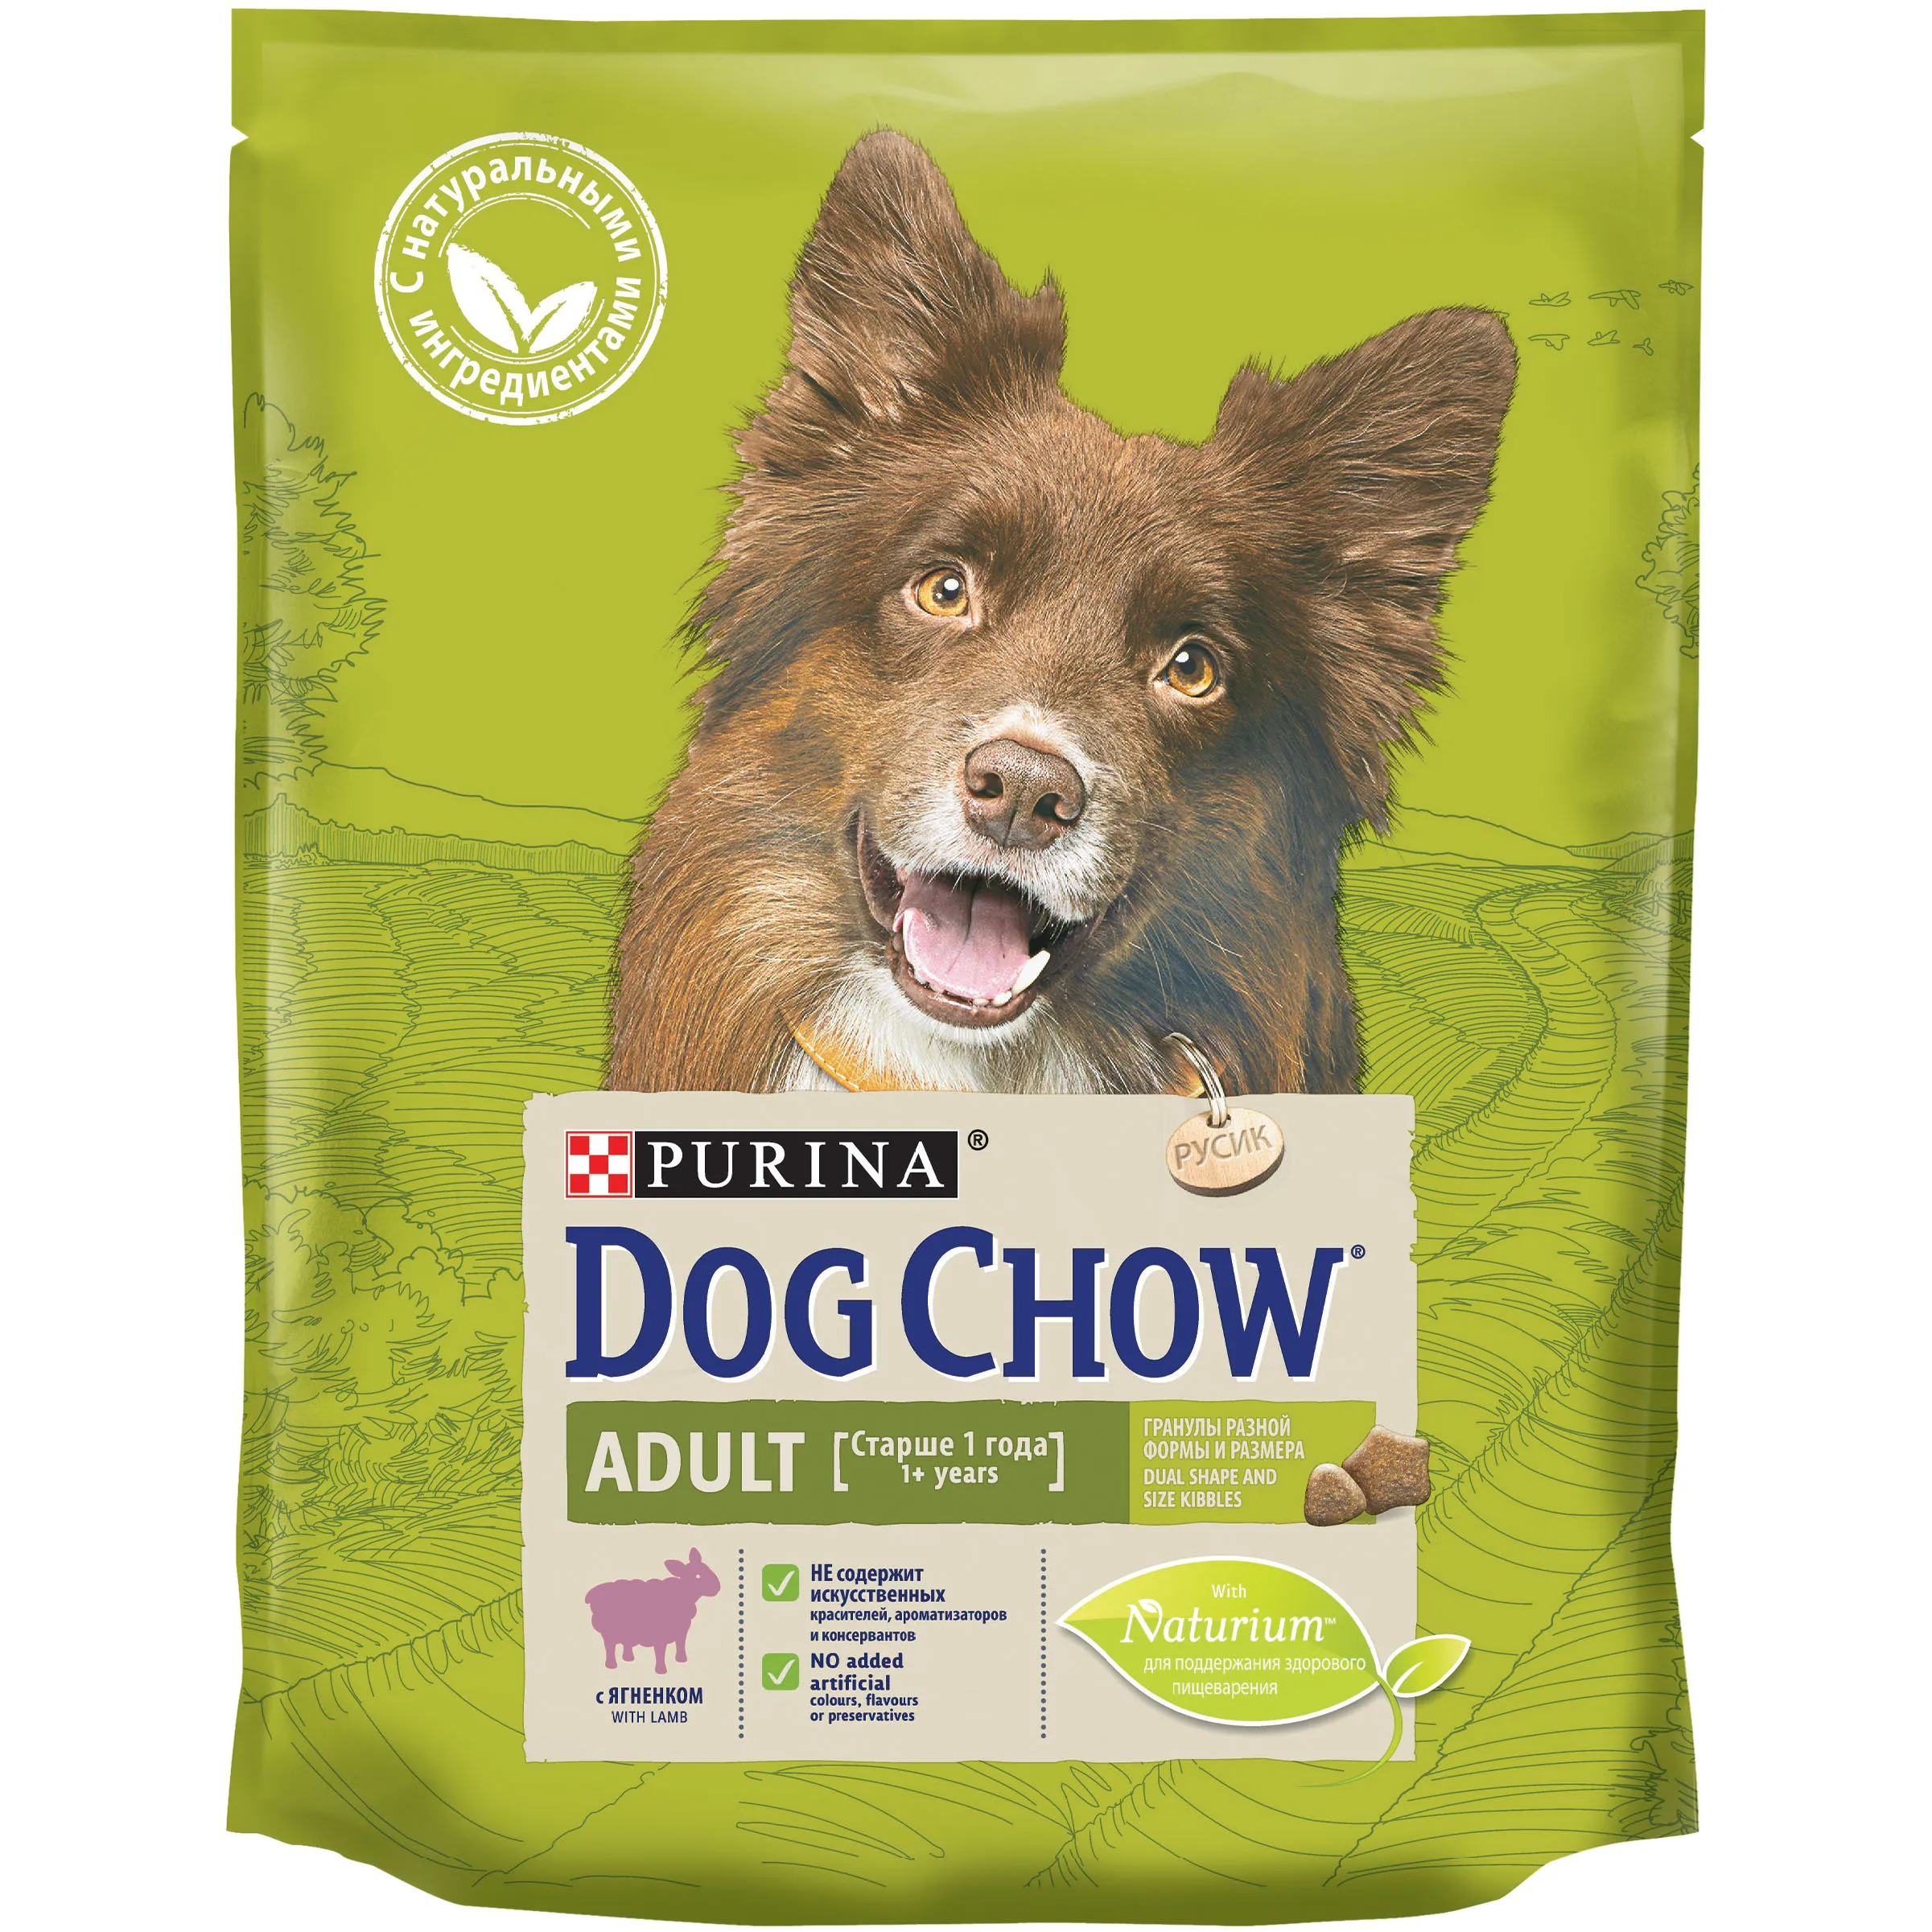 Сухой корм Dog Chow для взрослых собак, с ягненком, Пакет, 800 г